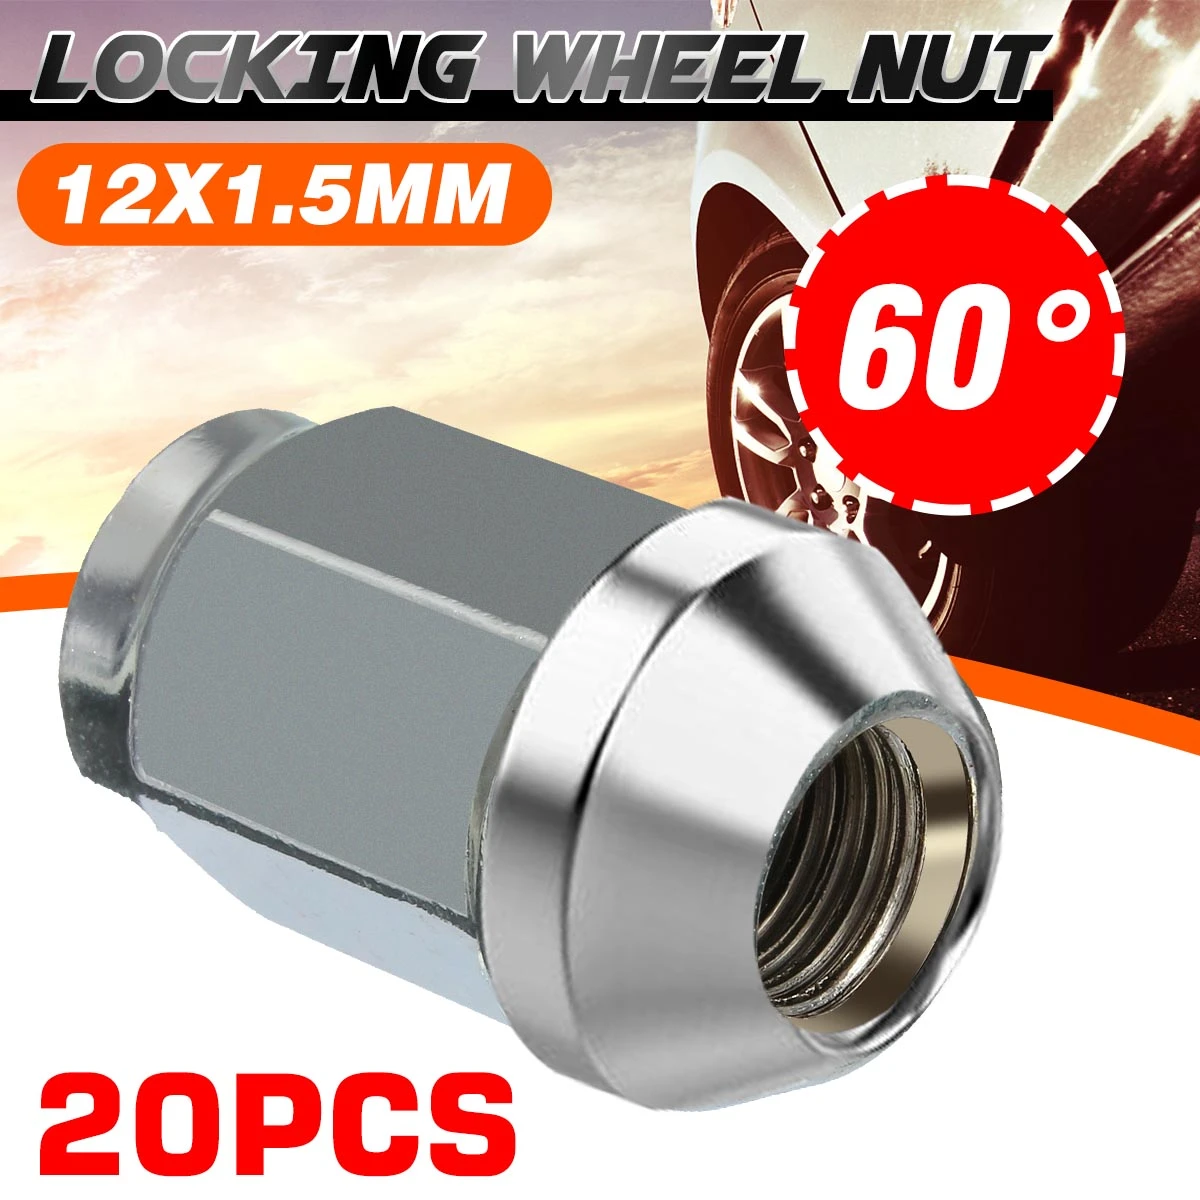 19mm Hex M12 x 1.5 Taper seat x 24 Car wheel closed nut nuts lugs bolts